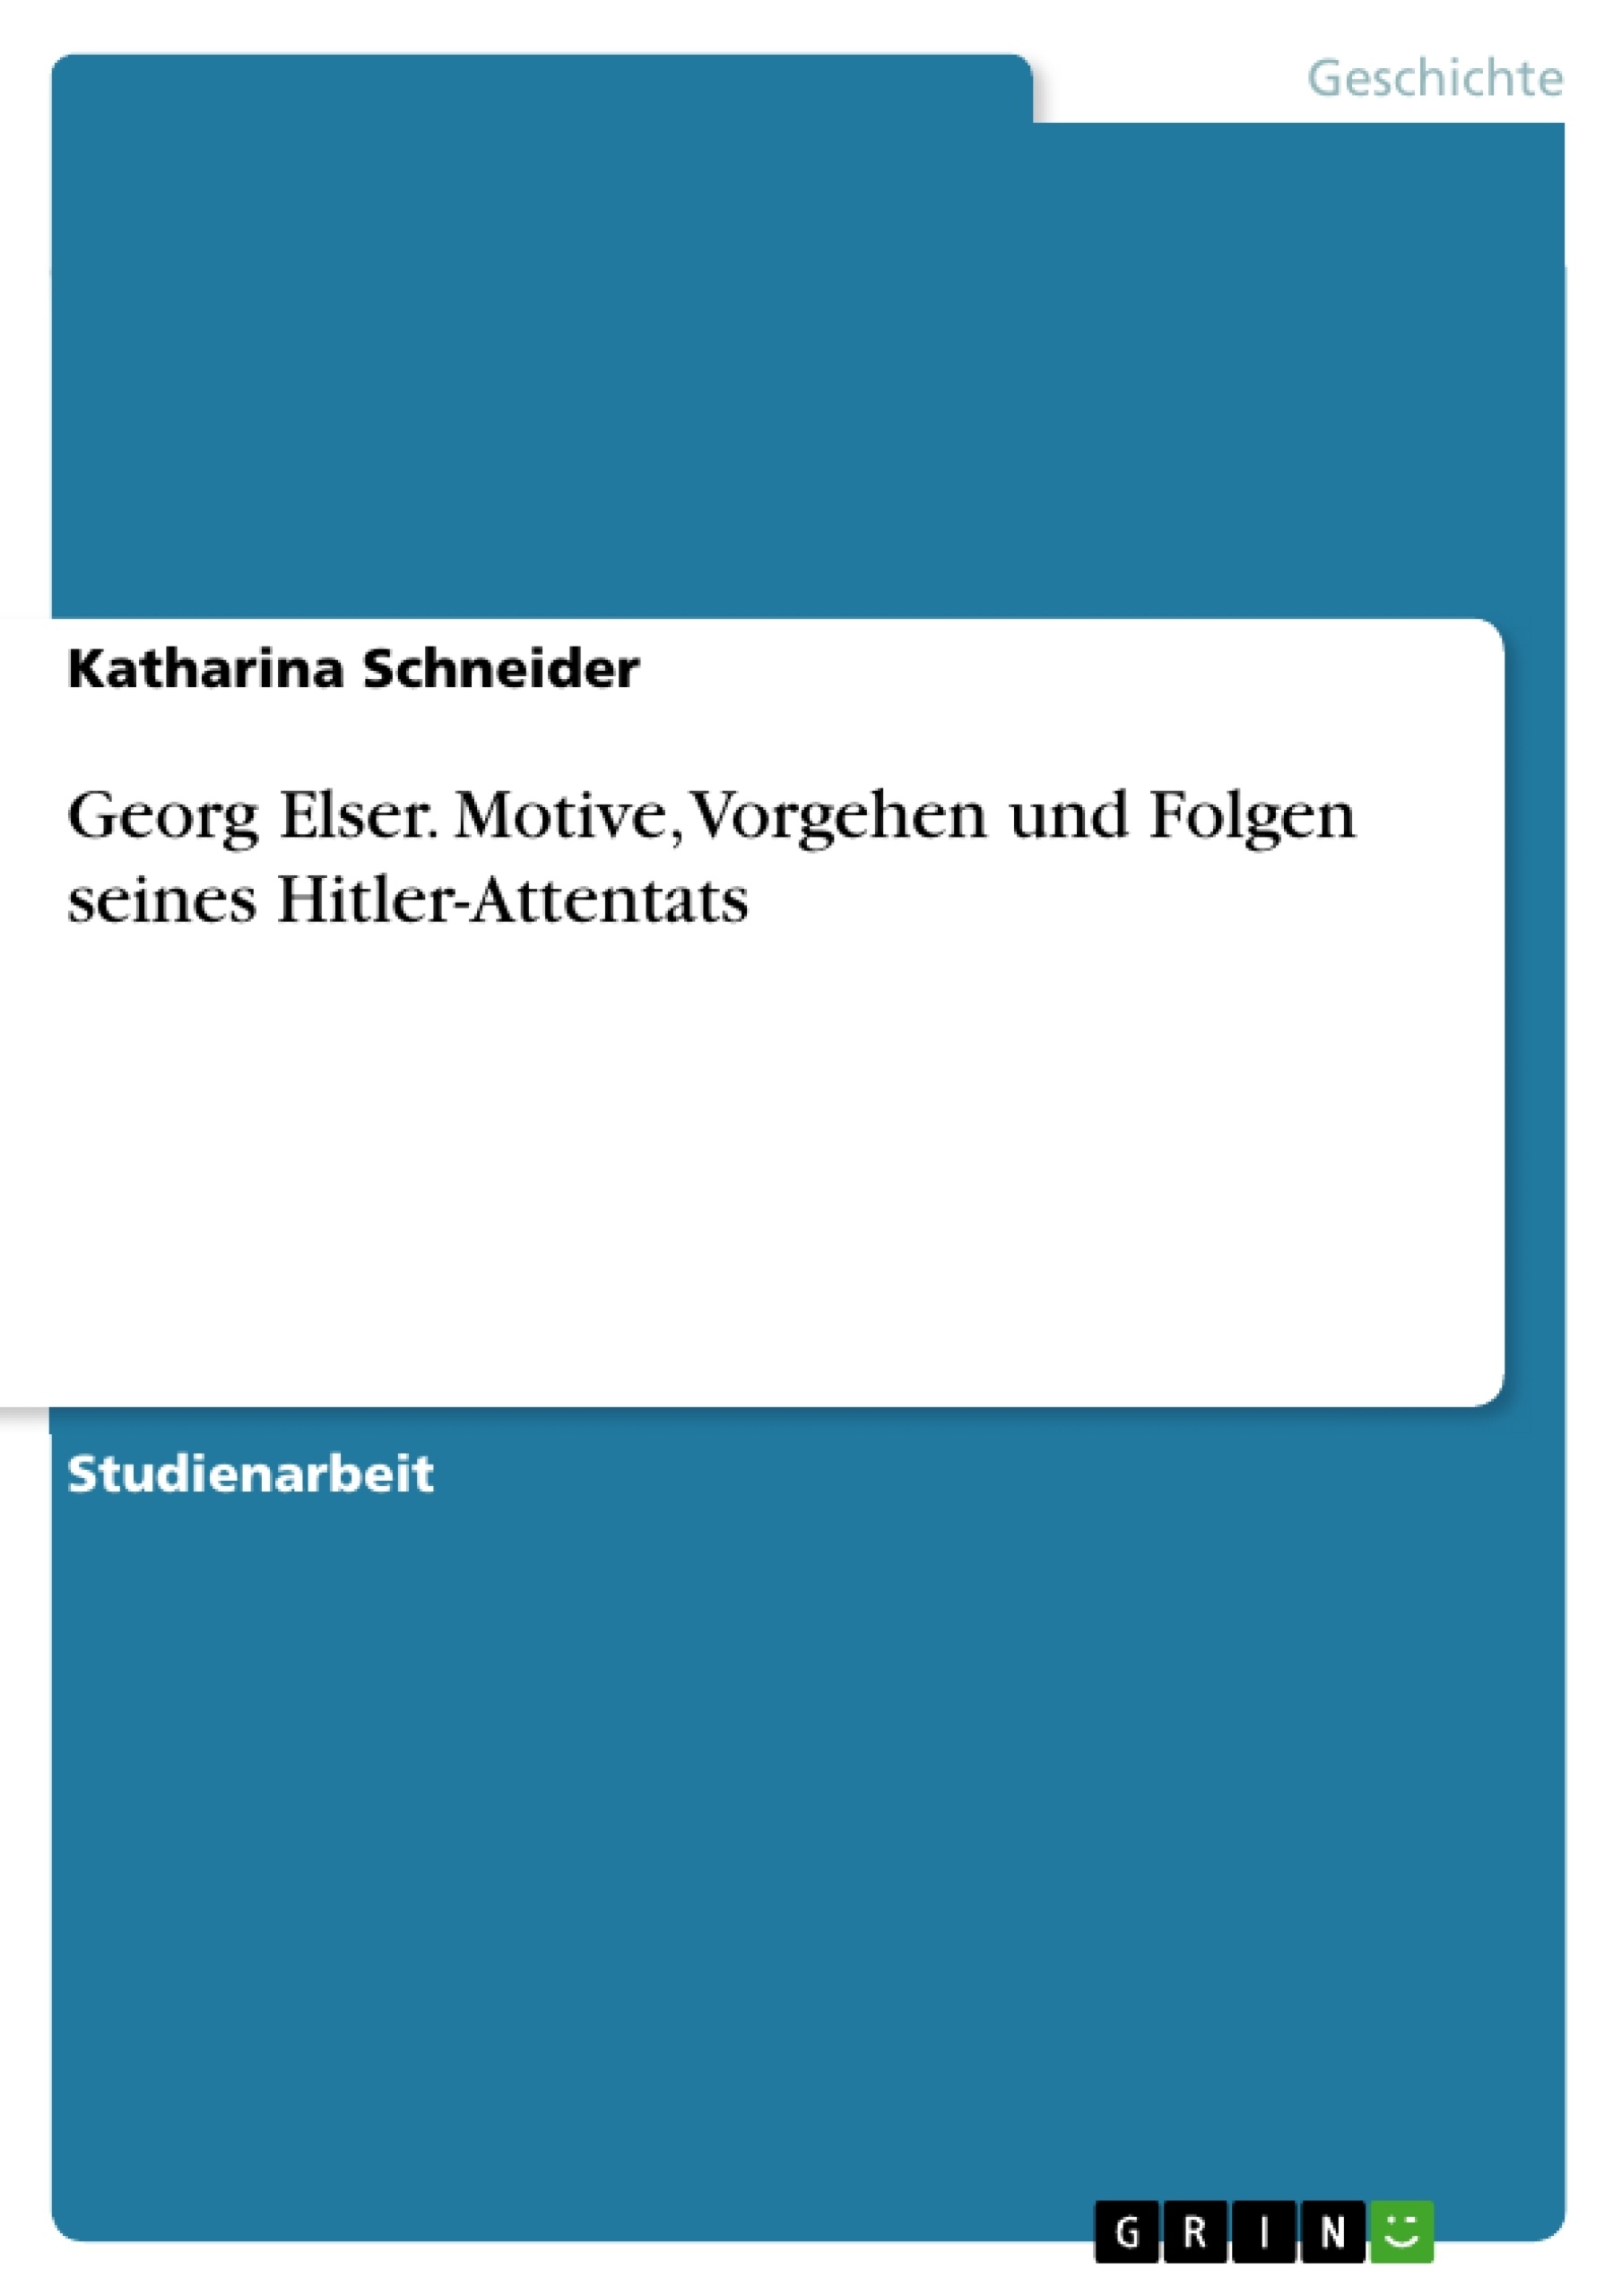 Title: Georg Elser. Motive, Vorgehen und Folgen seines Hitler-Attentats